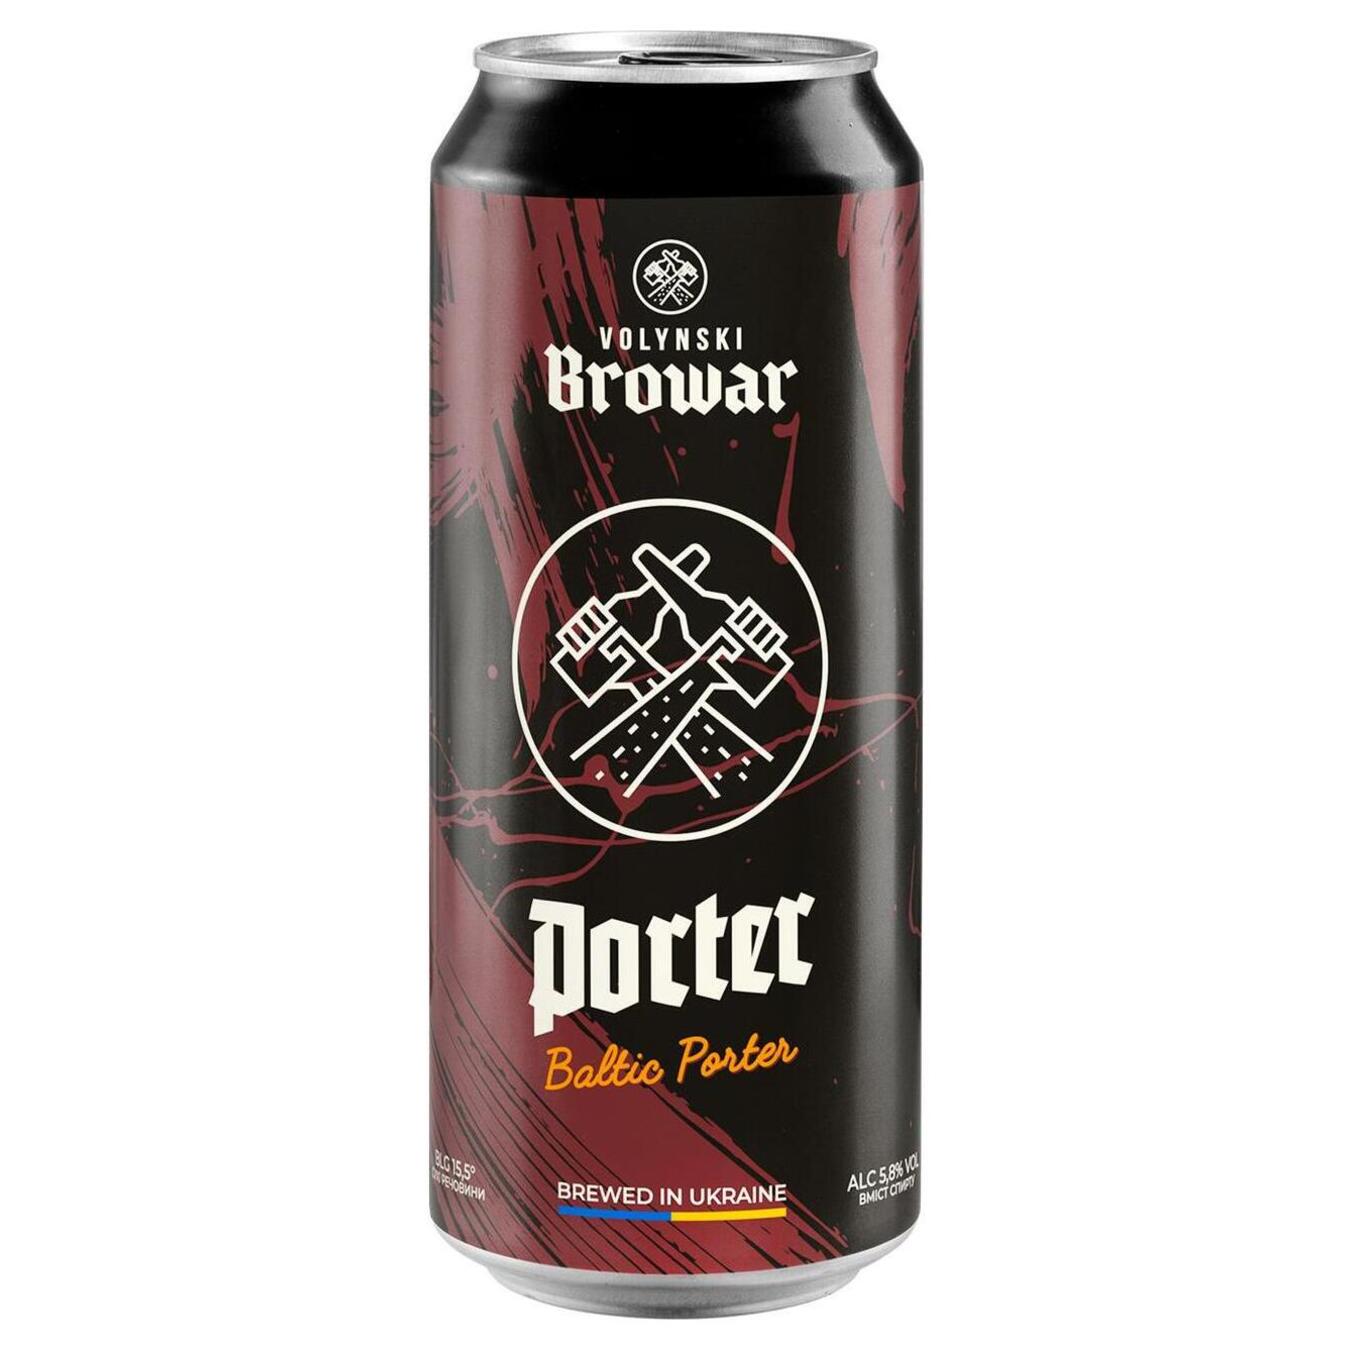 Пиво Волынский Бровар Porter темное нефильтрованное 5,8% 0,5л